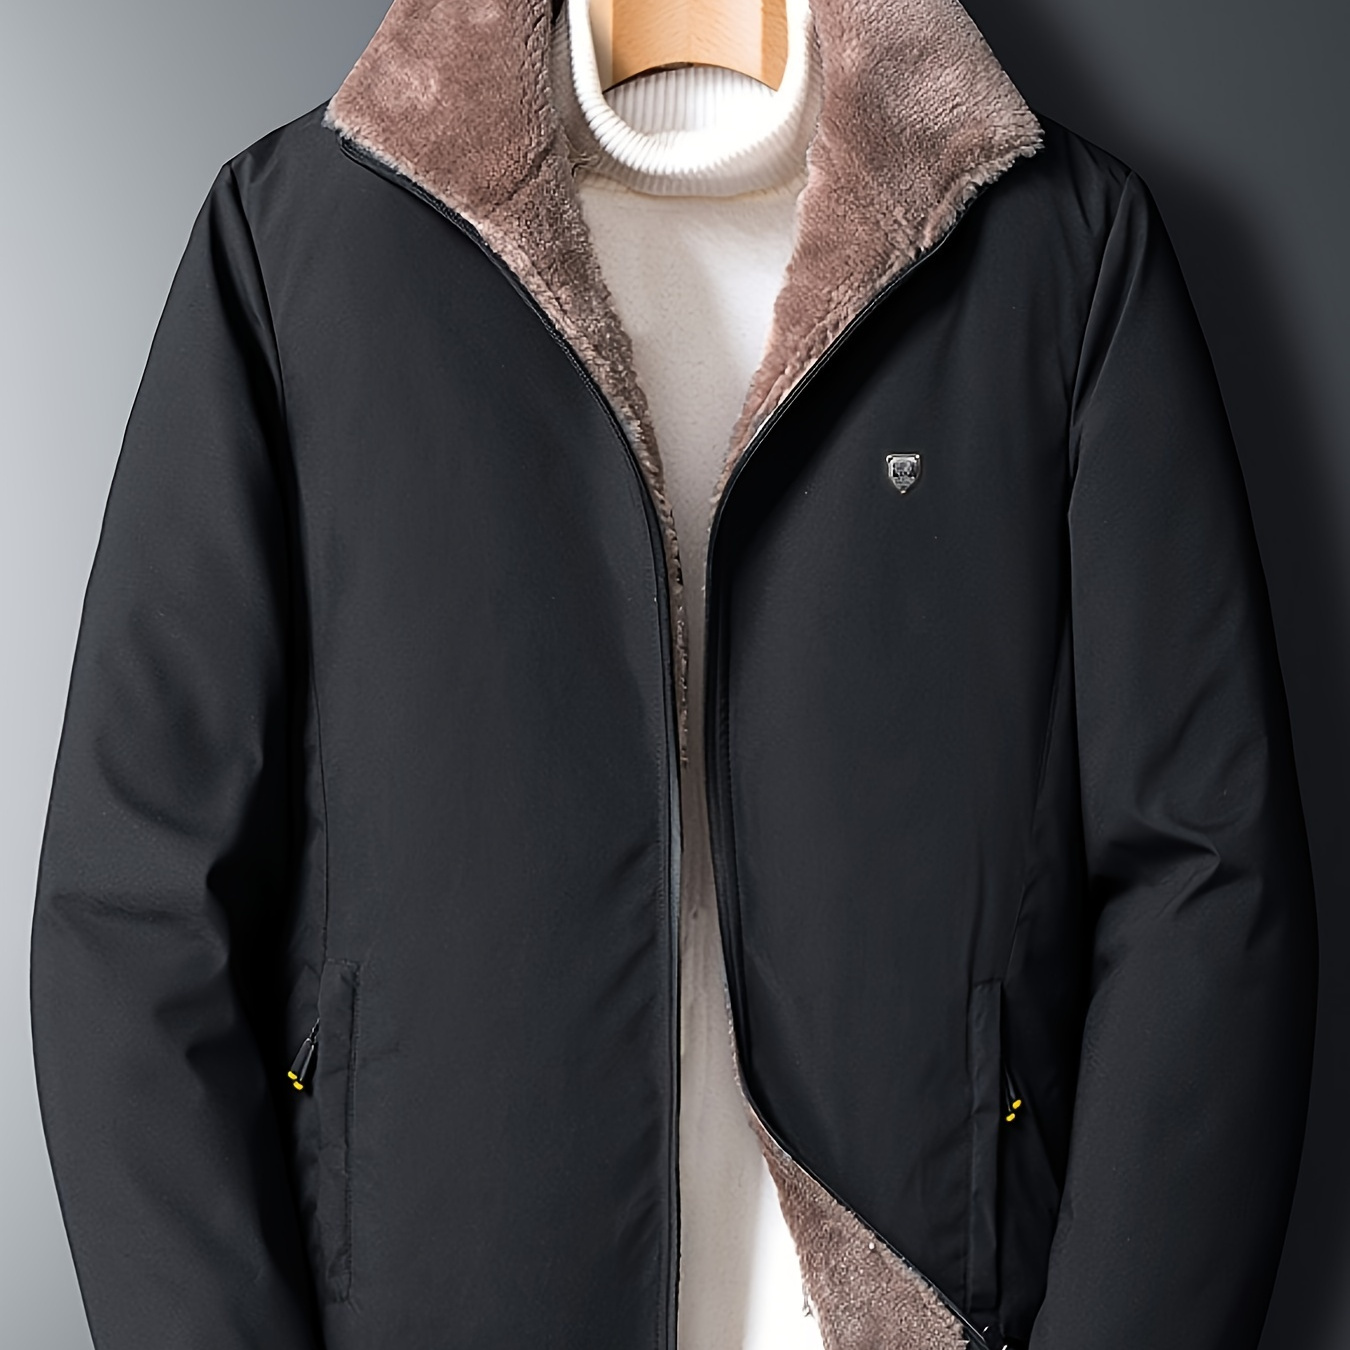 Men's Winter Coats Fleece Lined Sherpa Faux Fur Lapel Windproof Jacket ...